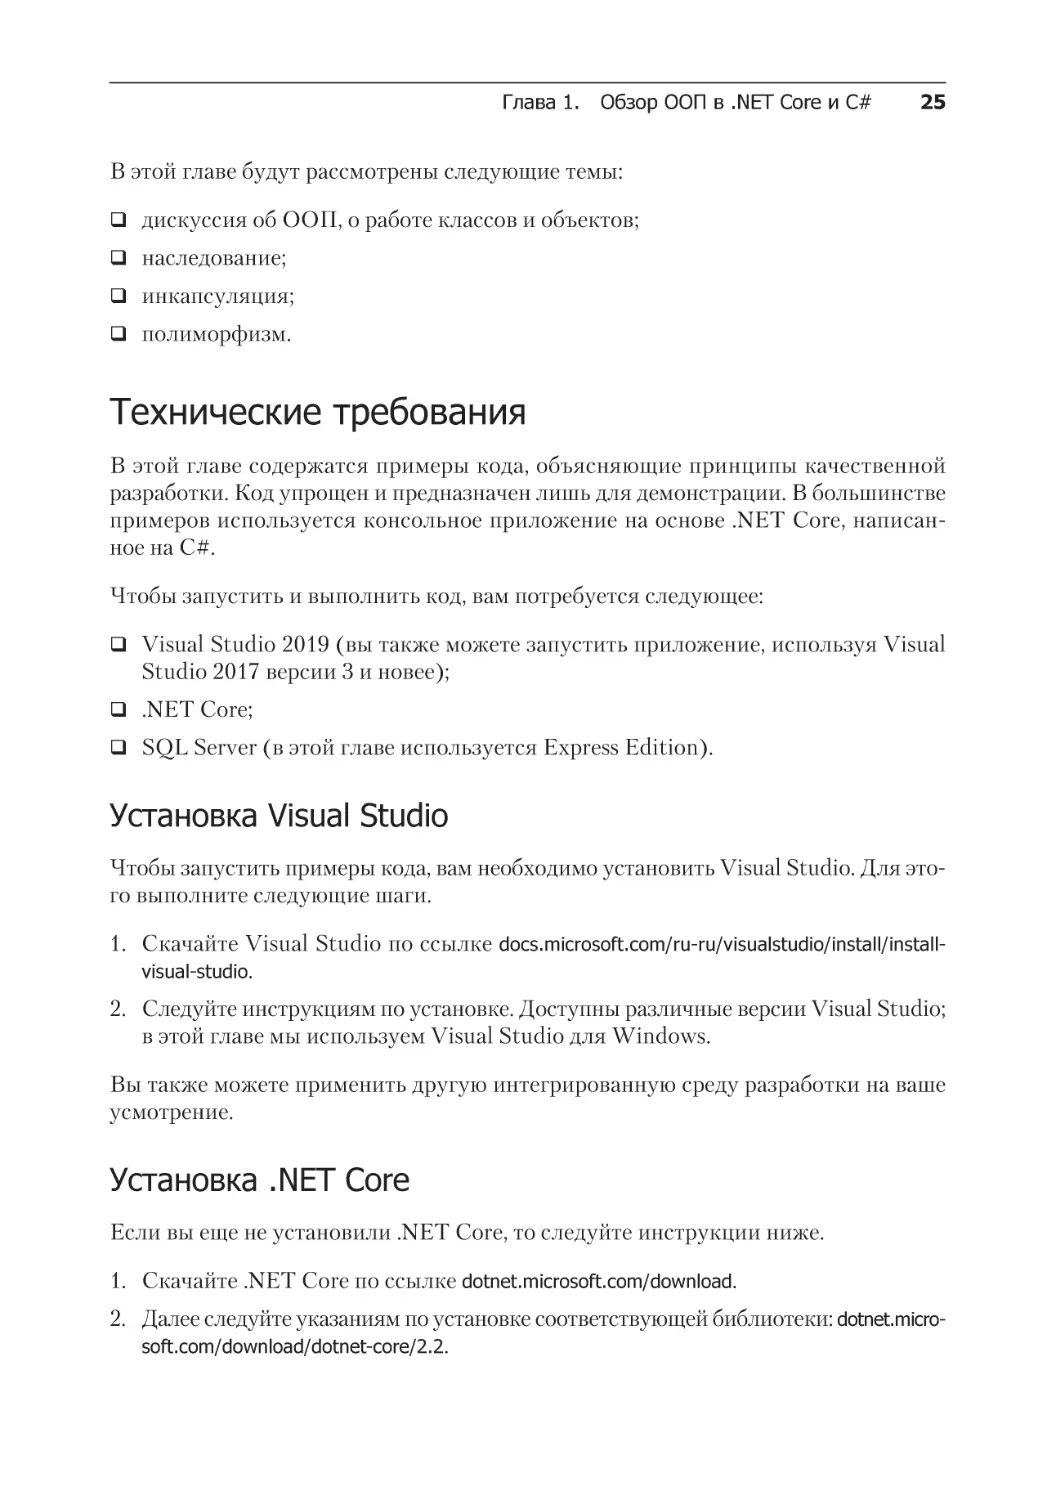 Технические требования
Установка Visual Studio
Установка .NET Core